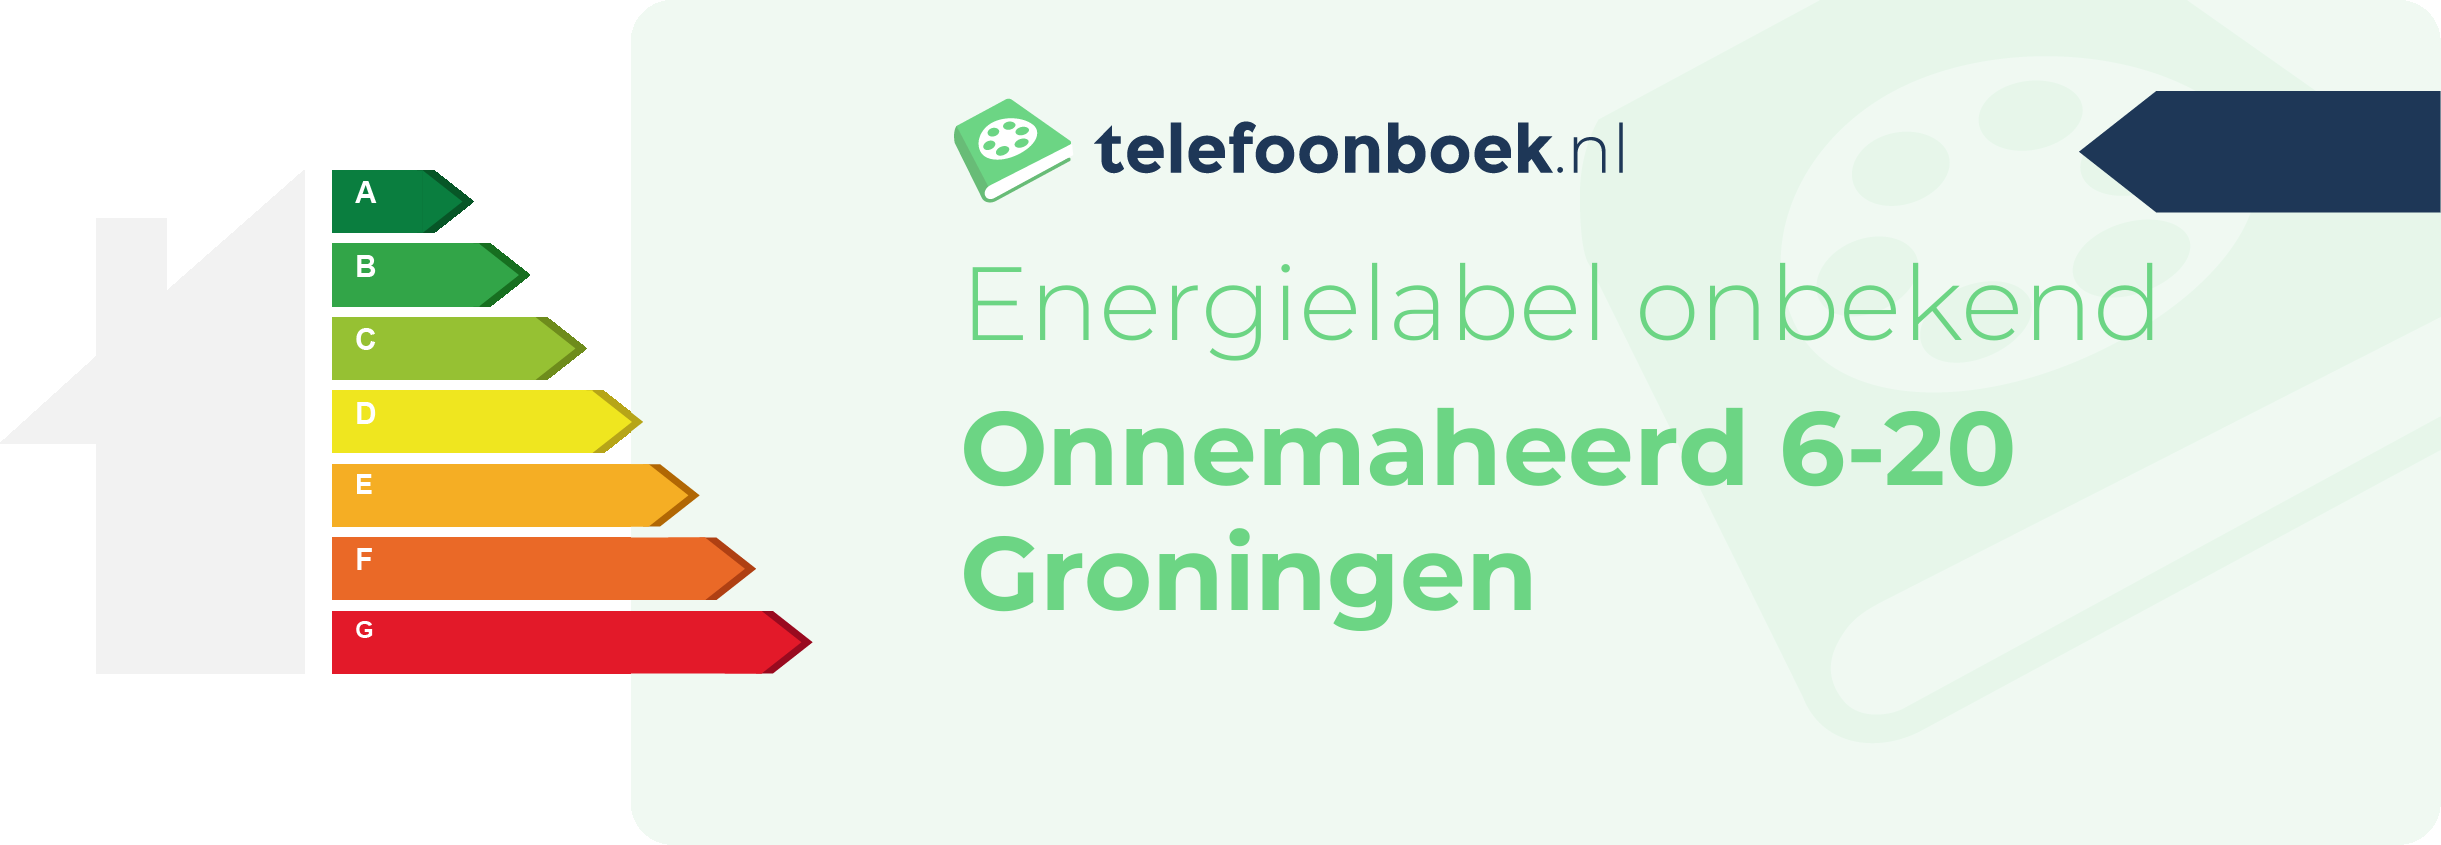 Energielabel Onnemaheerd 6-20 Groningen